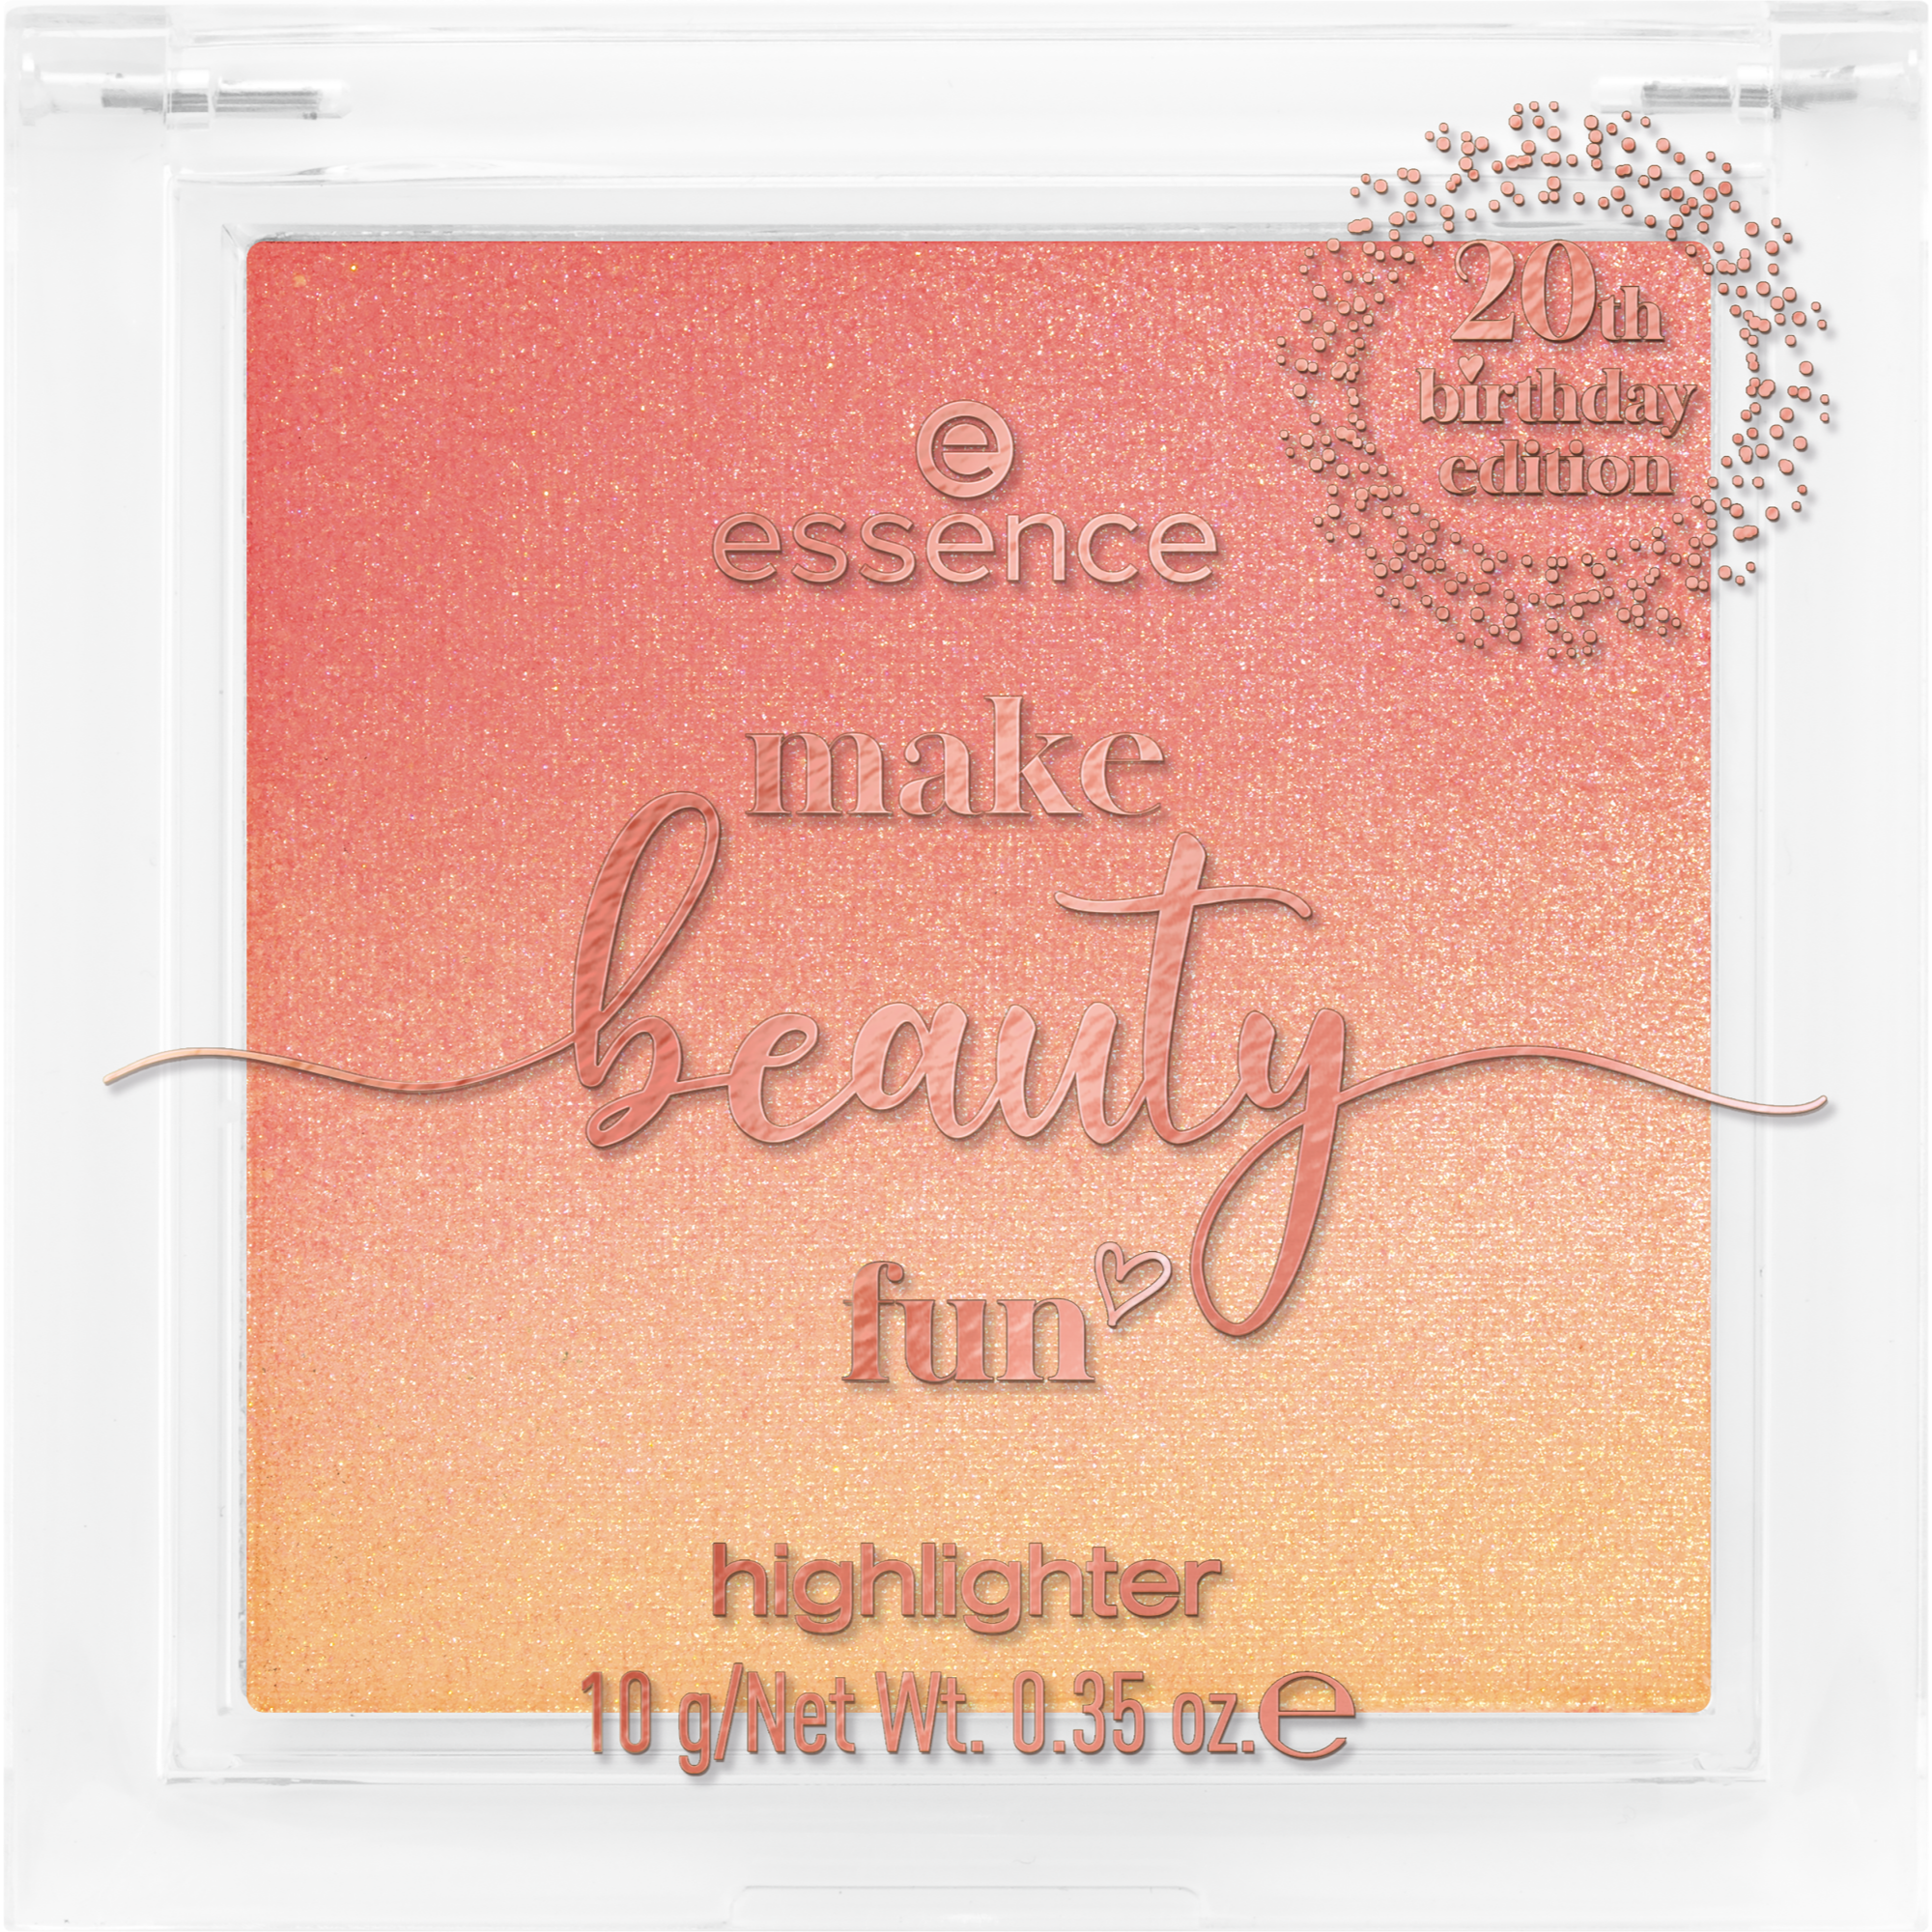 make beauty fun highlighter